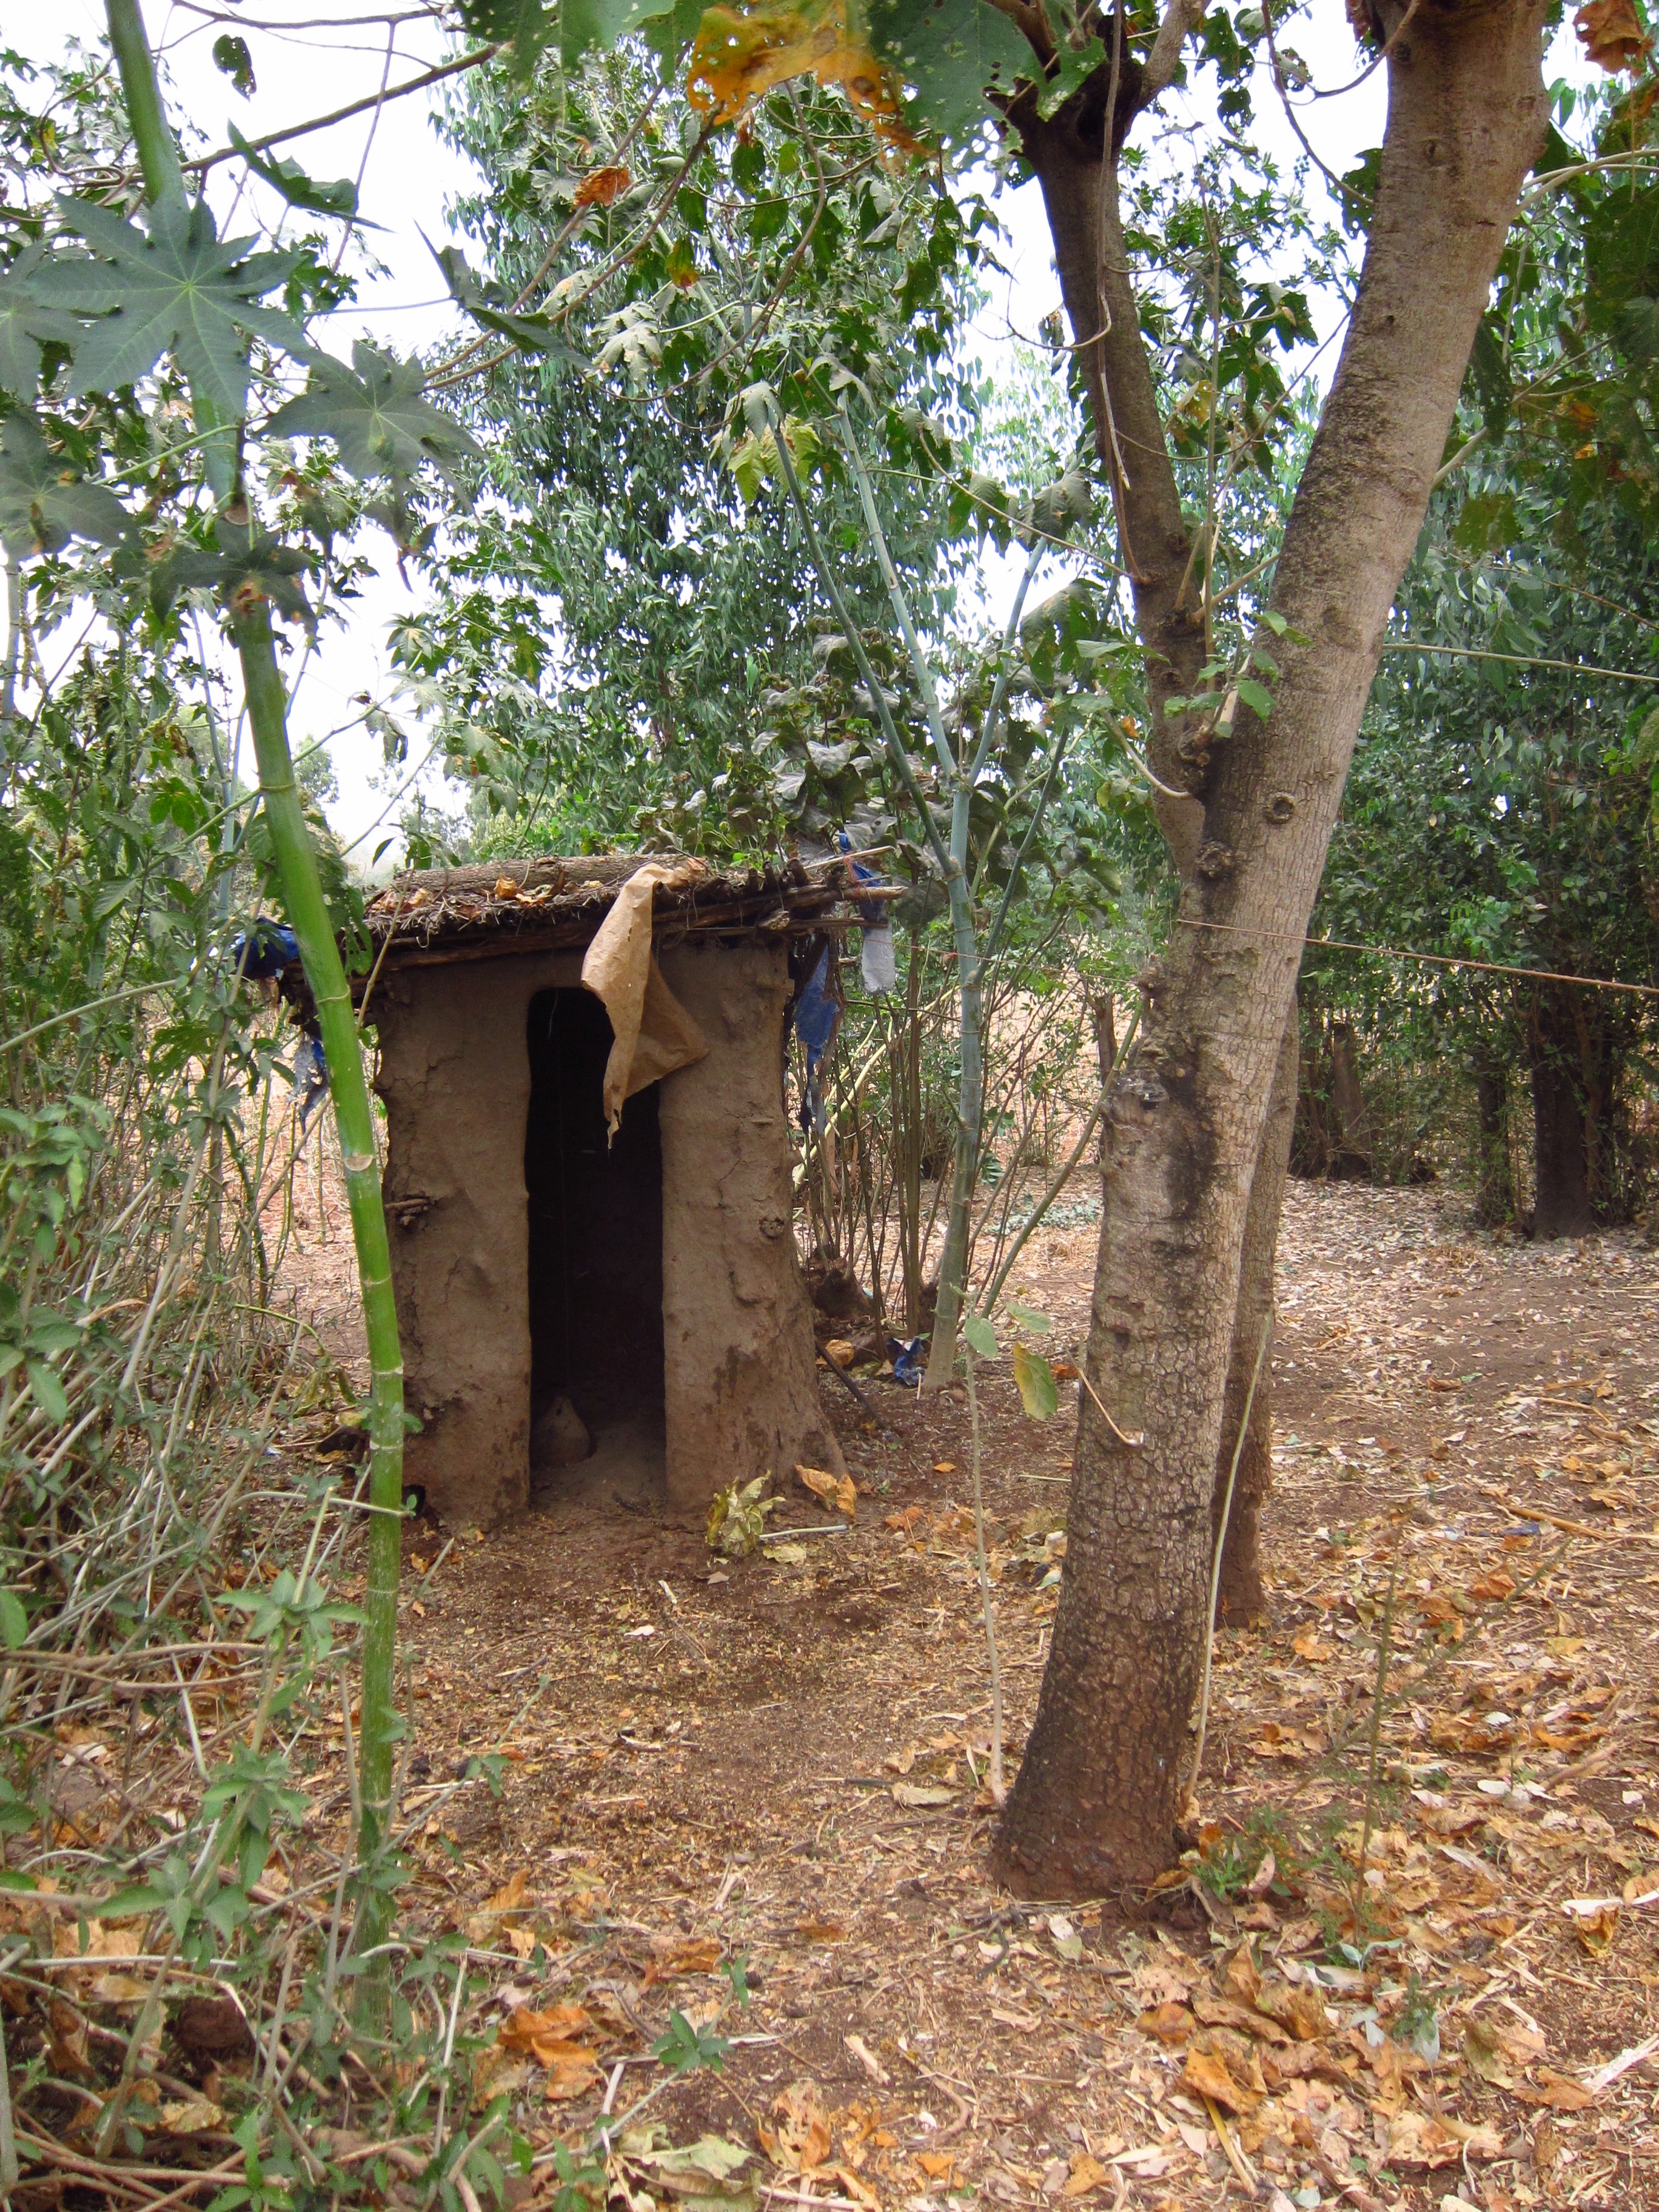 A toilet in Amhara, Ethiopia